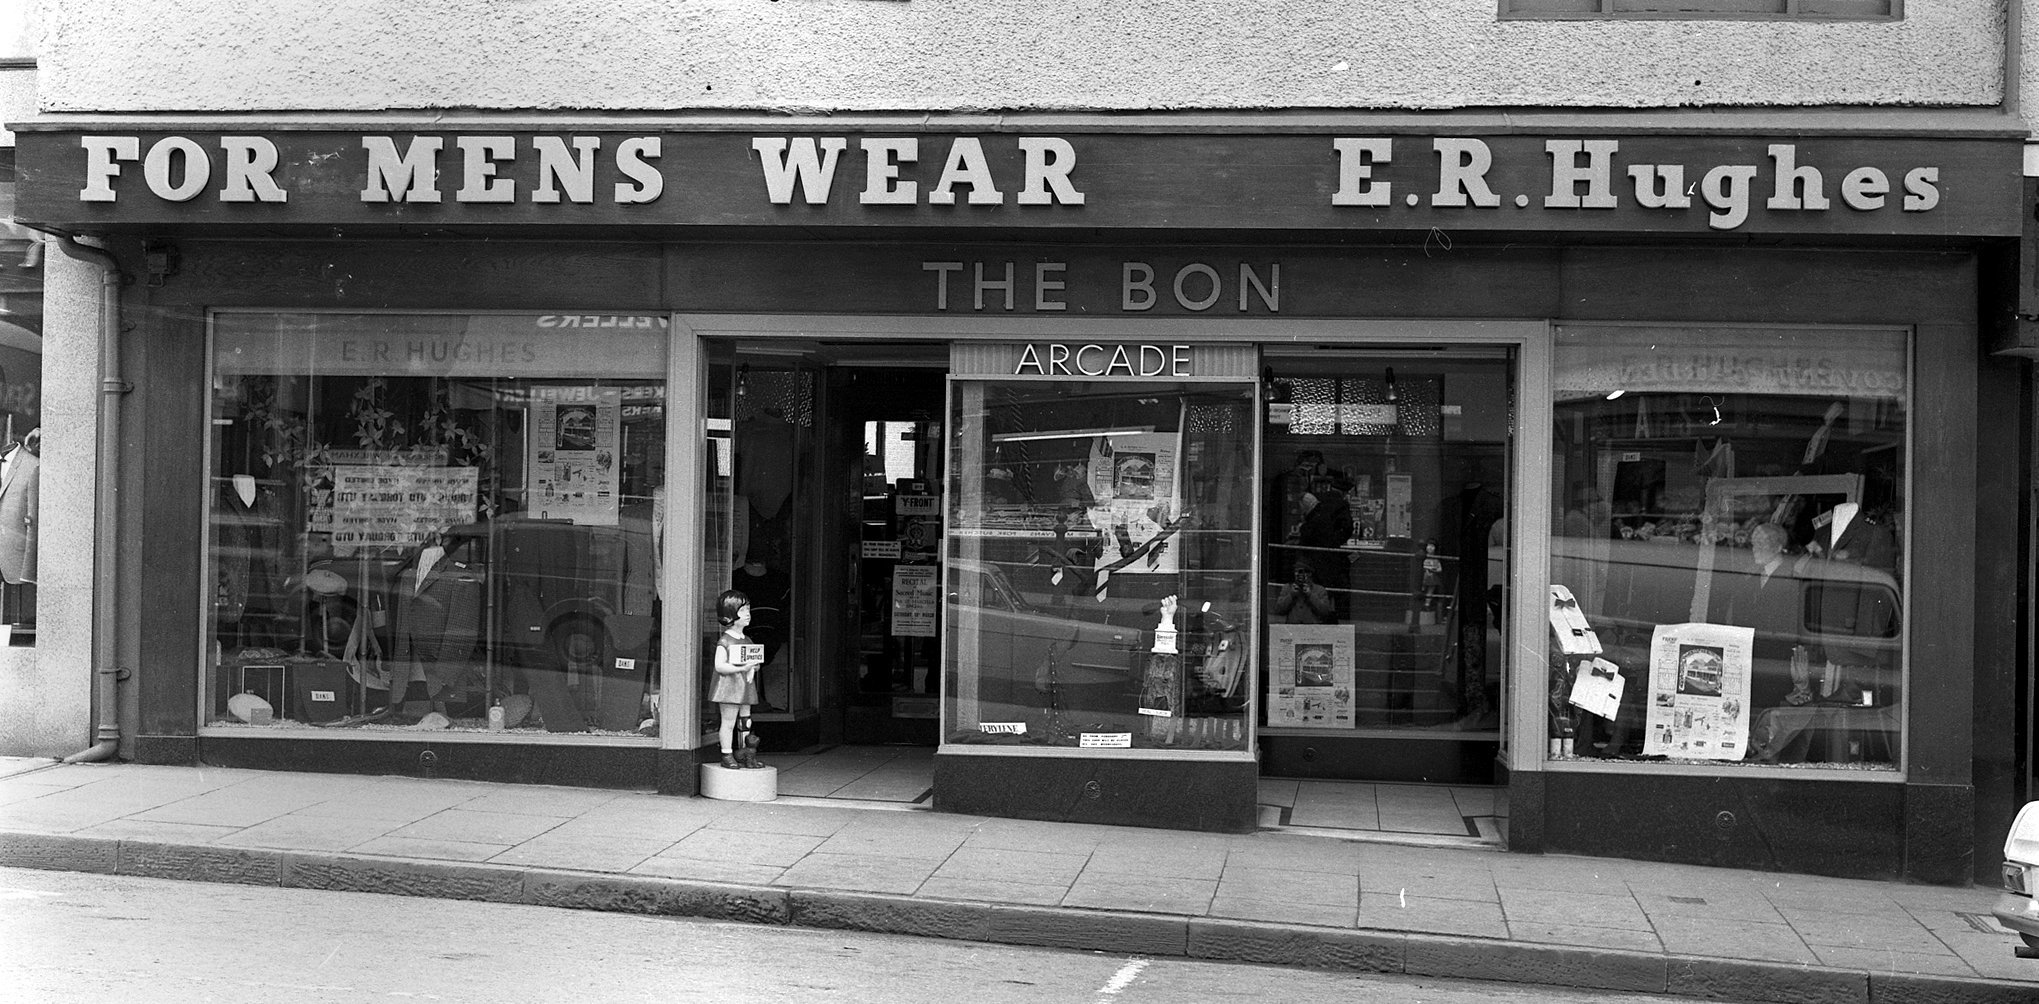 E.R. Hughes for Menswear - The Bon, in Wrexham, in 1966.